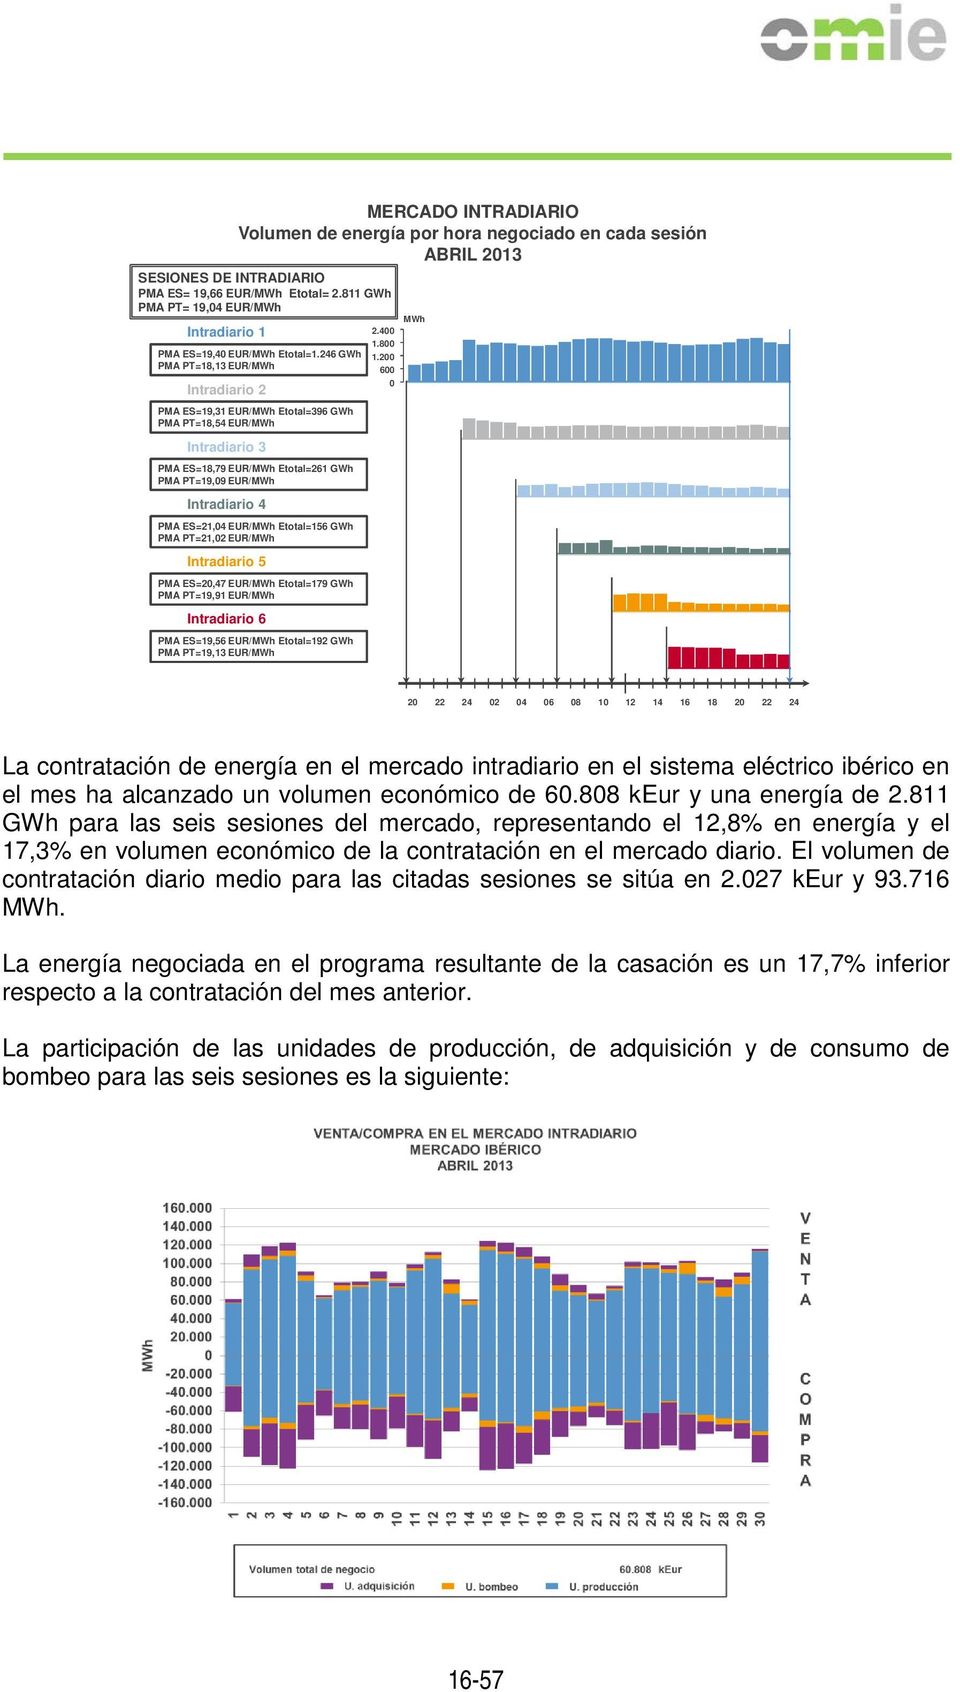 246 GWh PMA PT=18,13 EUR/MWh Intradiario 2 PMA ES=19,31 EUR/MWh Etotal=396 GWh PMA PT=18,54 EUR/MWh Intradiario 3 PMA ES=18,79 EUR/MWh Etotal=261 GWh PMA PT=19,09 EUR/MWh Intradiario 4 PMA ES=21,04